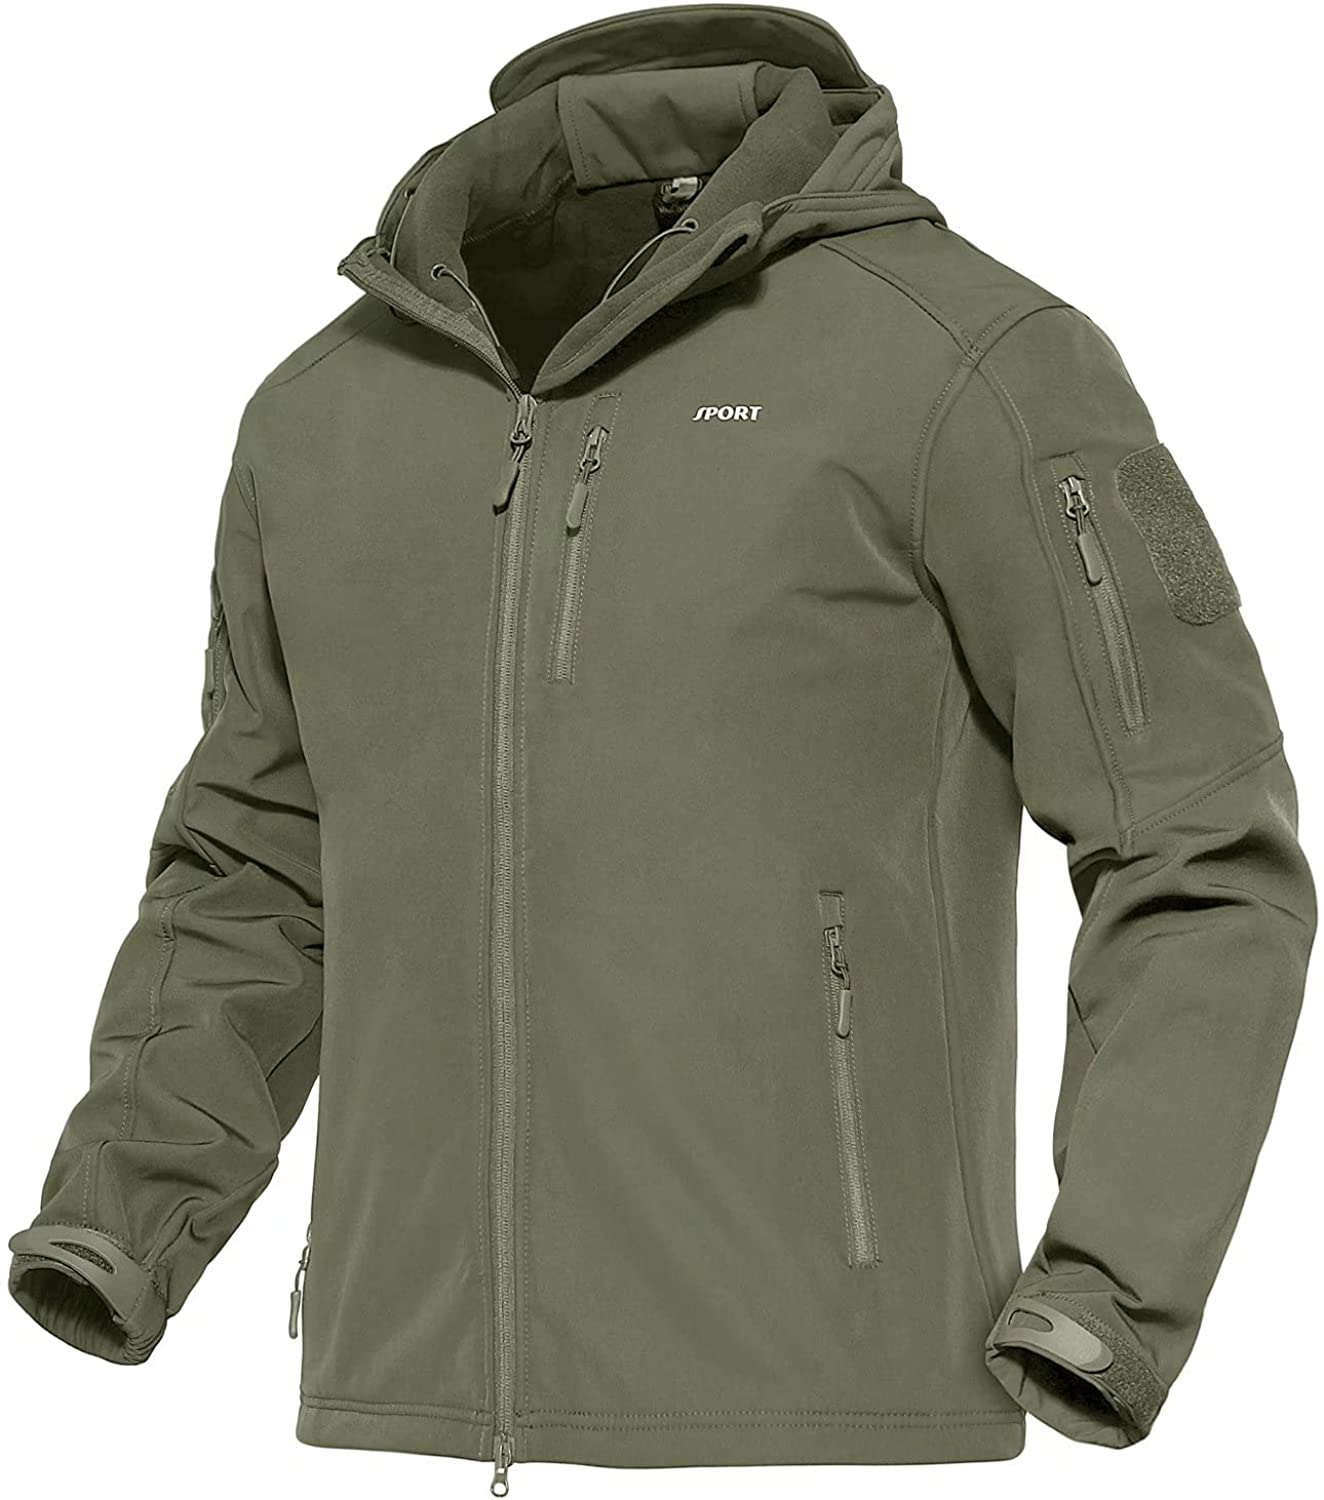 MAGCOMSEN Men's Windbreaker Jacket Winter Coats 6 Zipper Pockets Hooded Snow Ski Jacket Water Resistant Tactical Jacket 